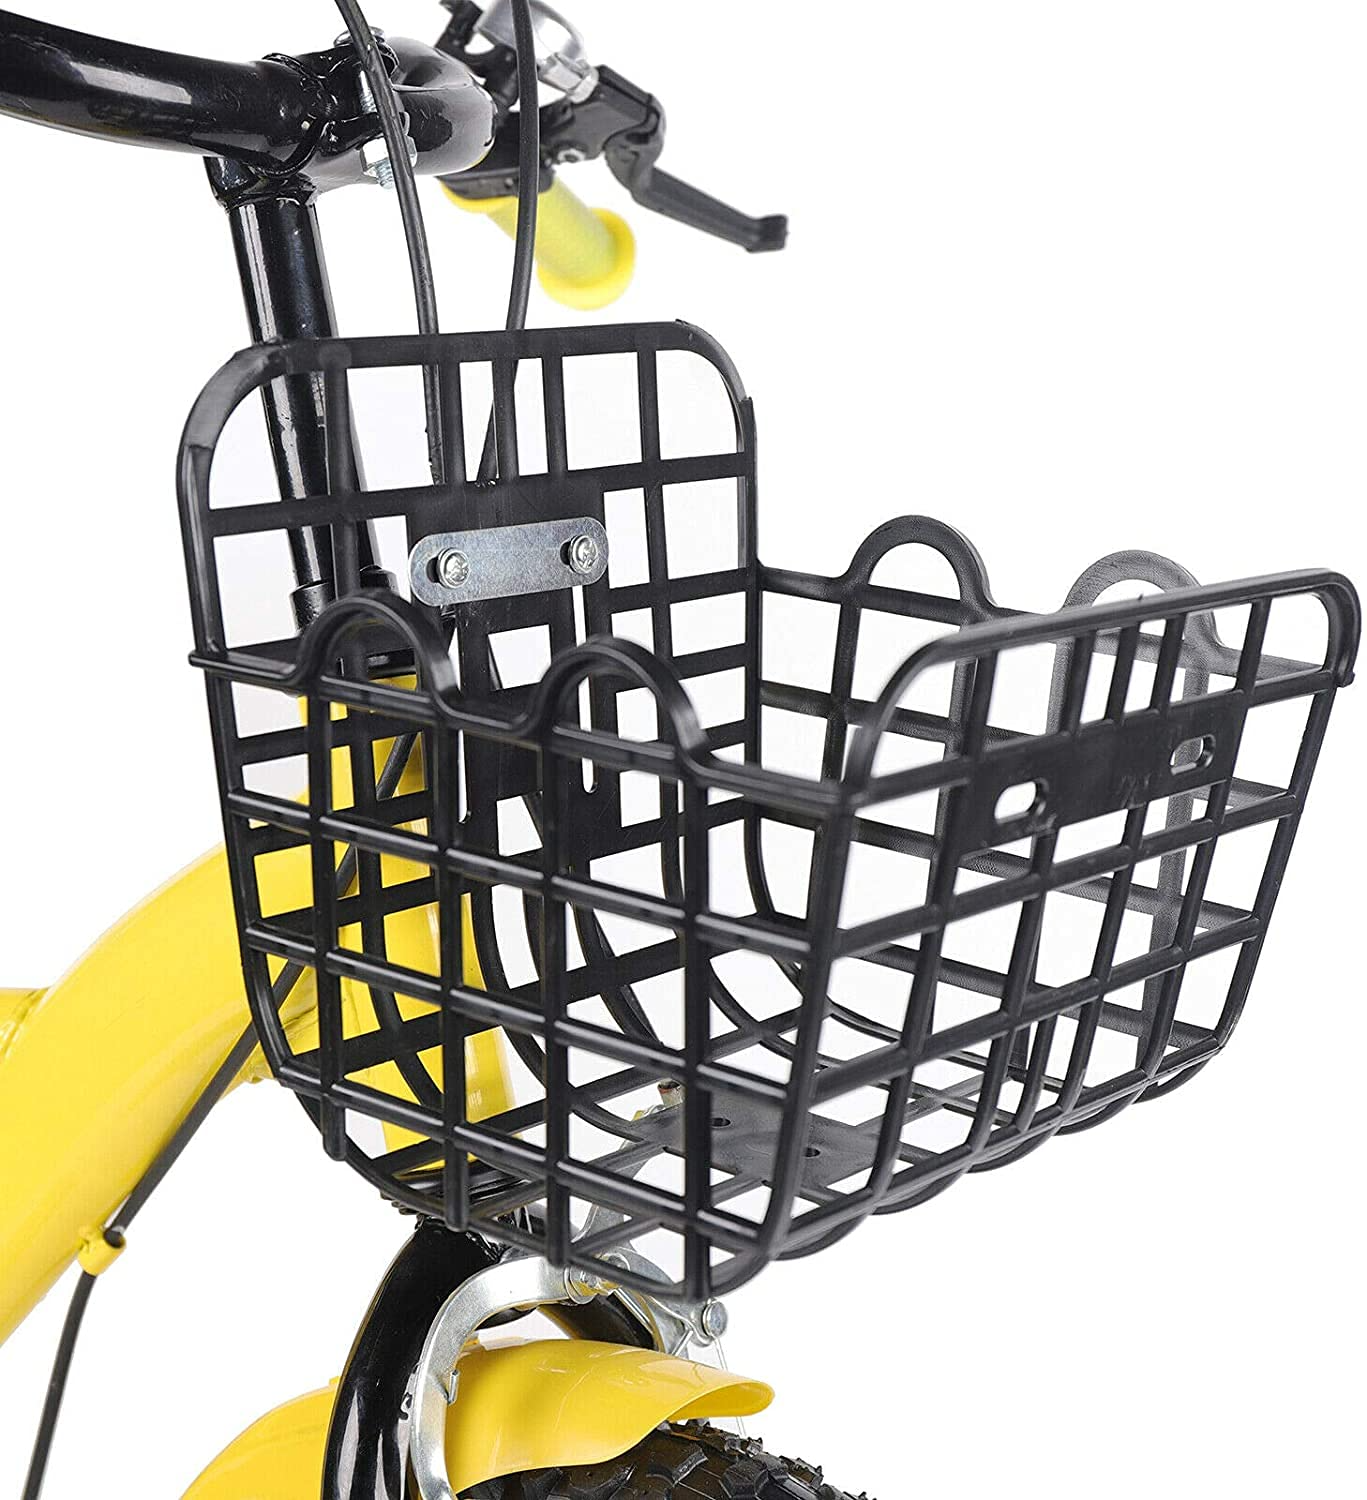 12 Zoll Gelb Kinderfahrrad mit Stützräder Korb Kinderrad Fahrrad